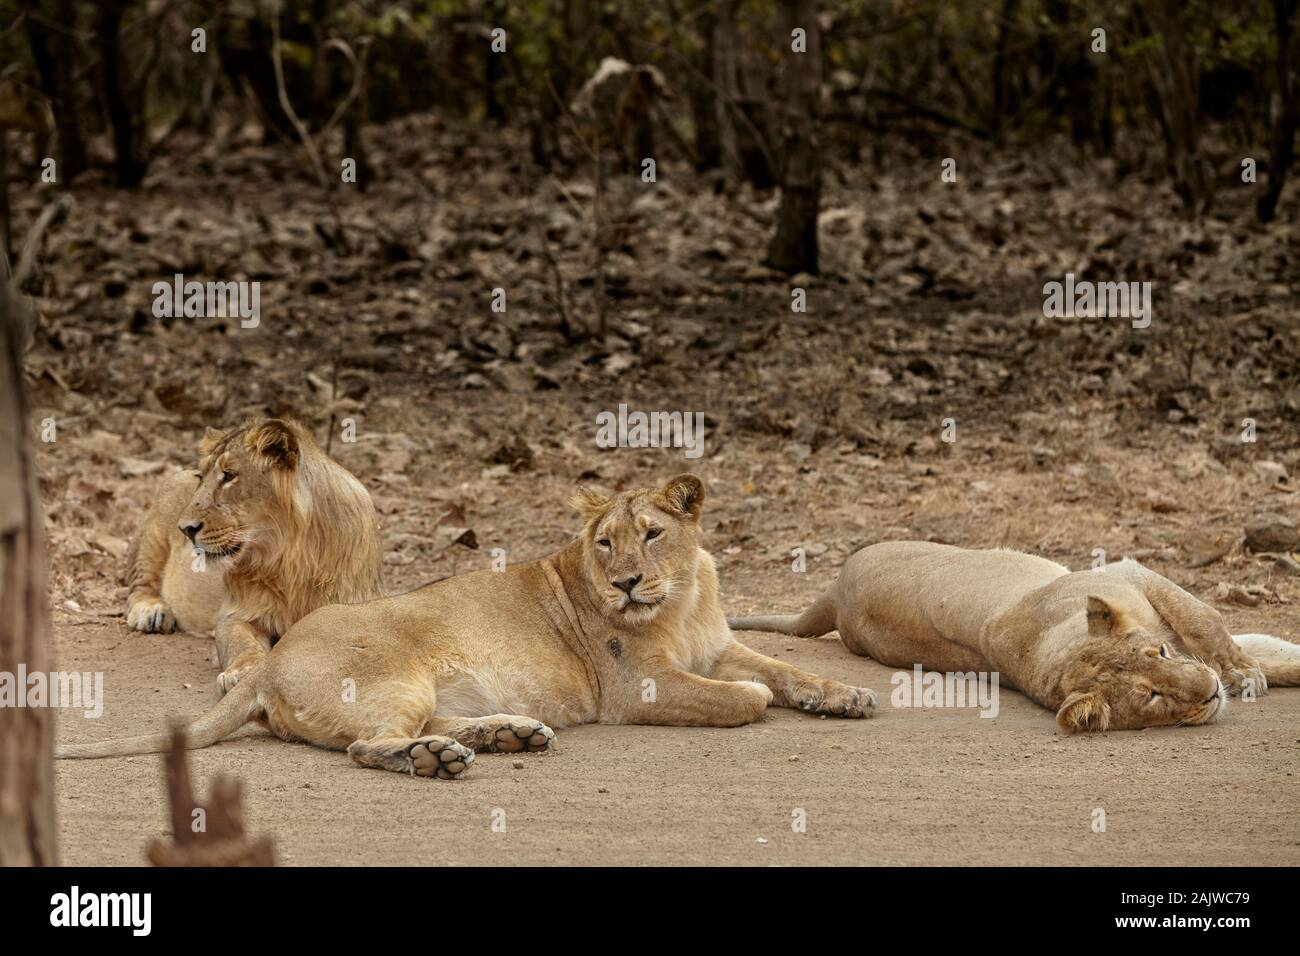 Les lions d'Asie sur la voie au RIF, forêt de l'Inde. Banque D'Images